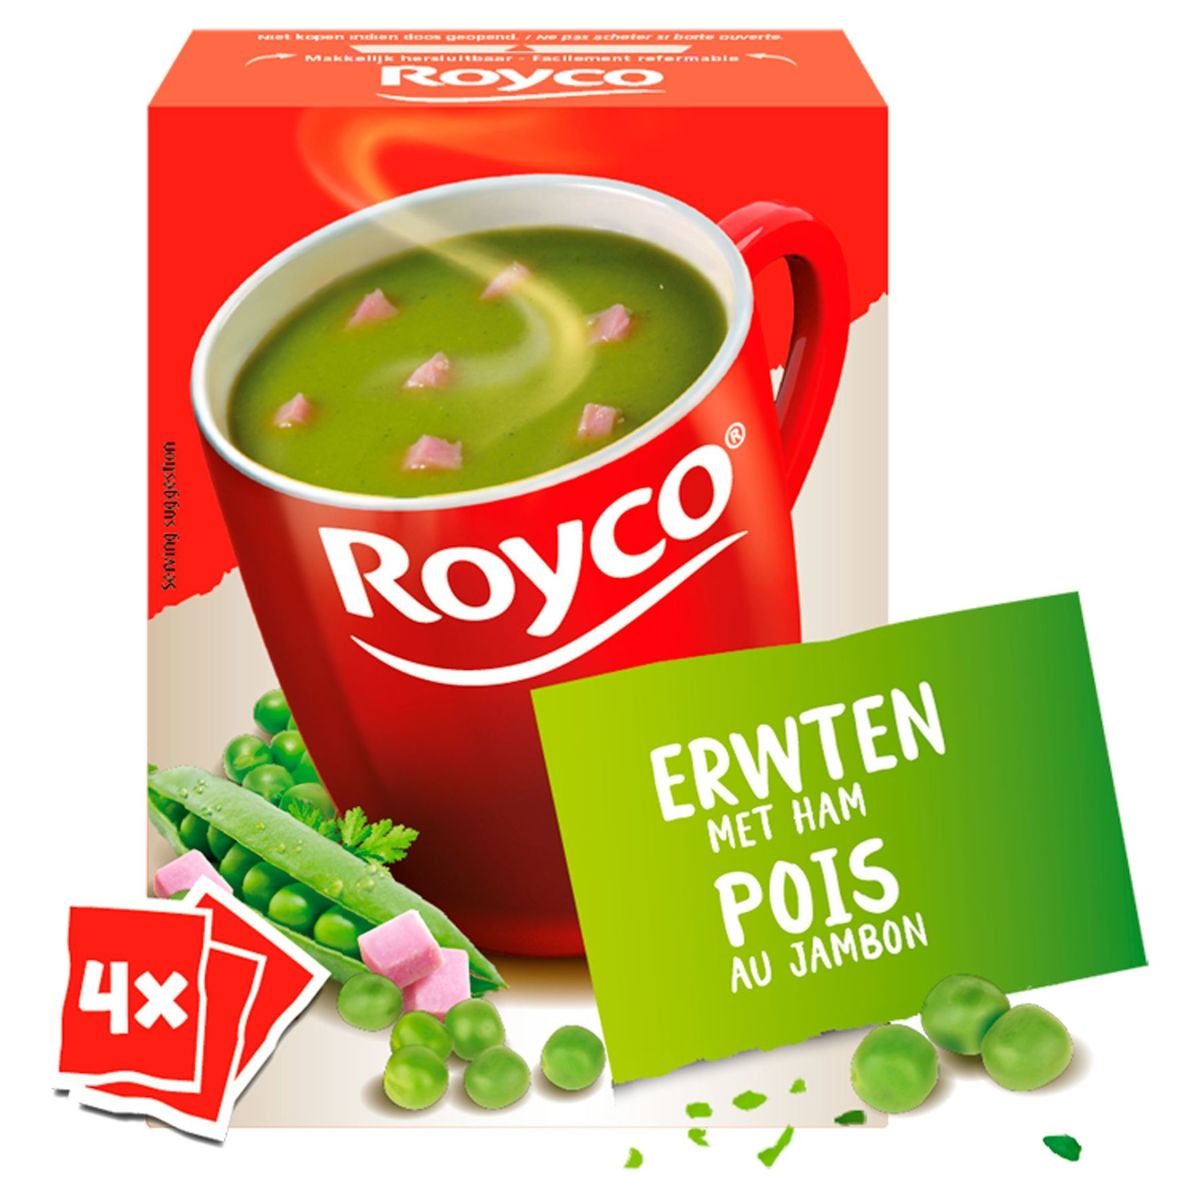 Royco Pois au Jambon 4 x 22.5 g